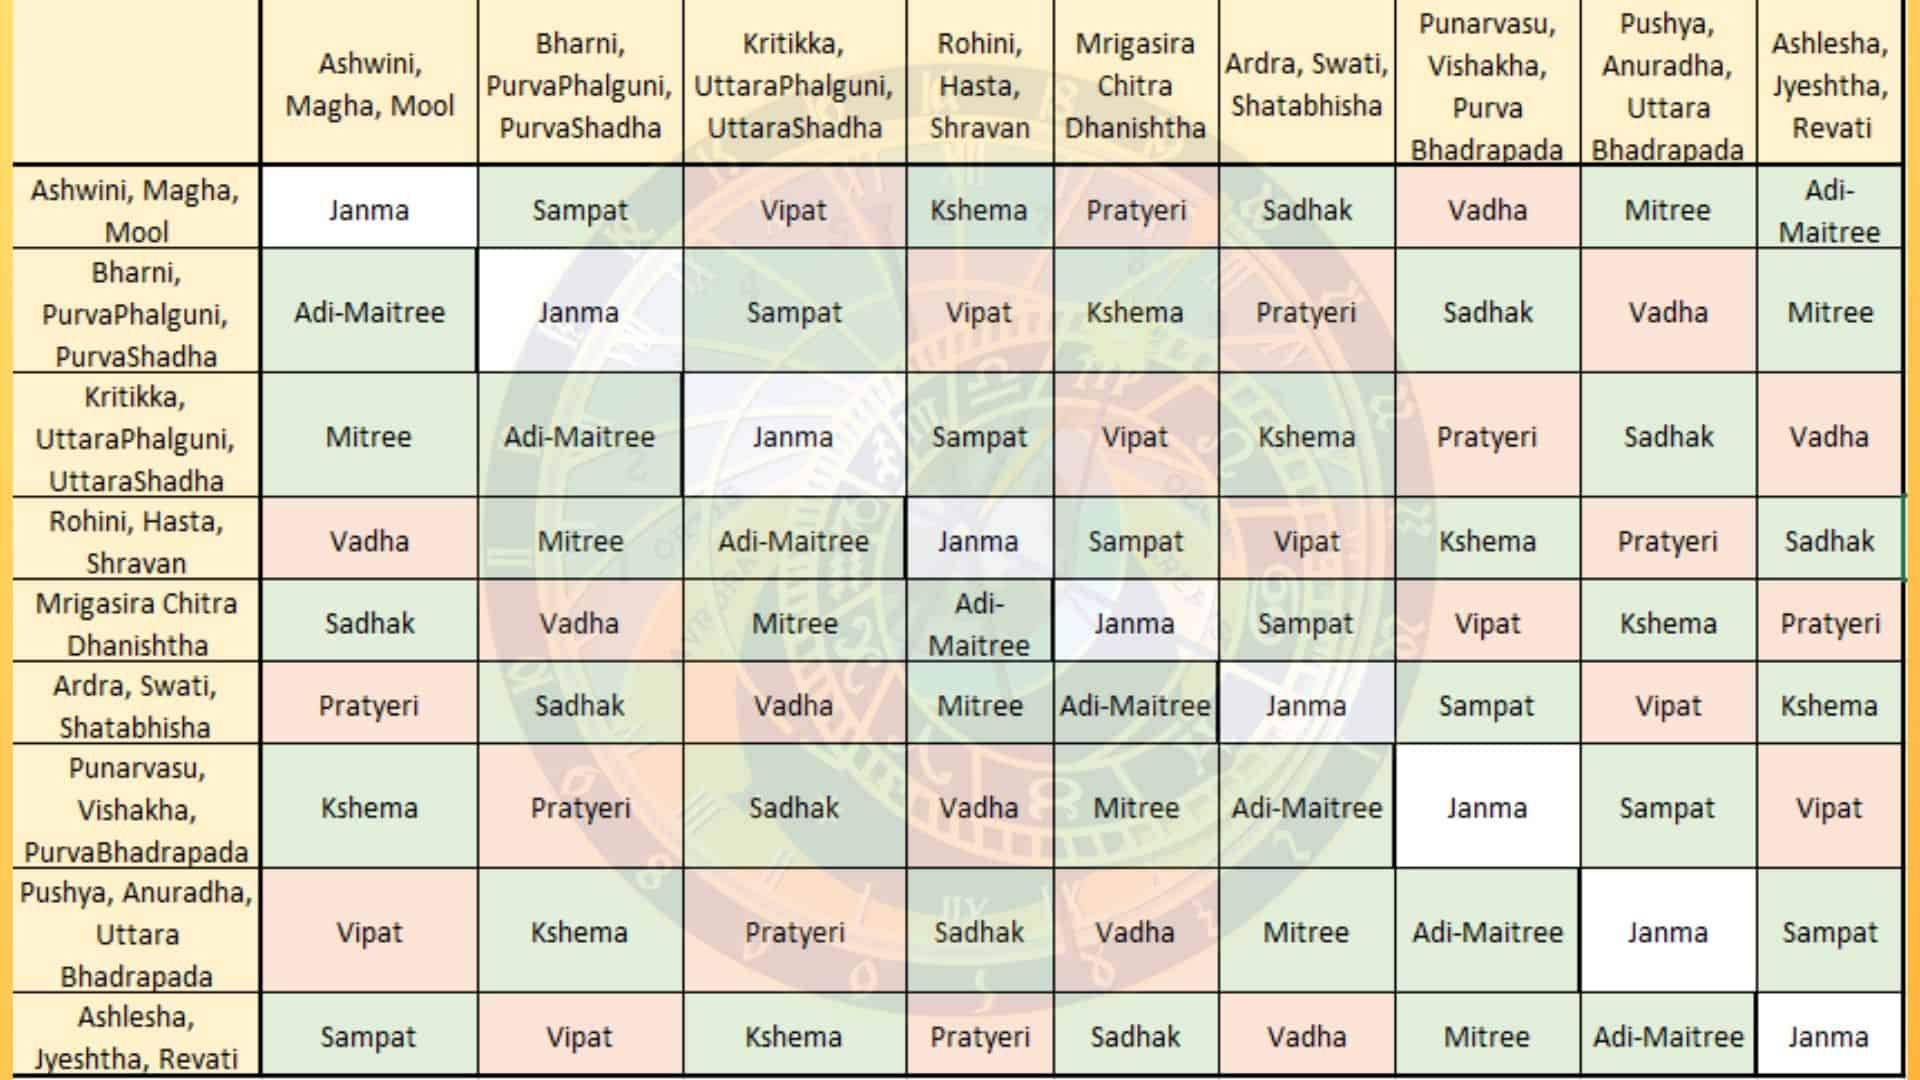 imha yoni in astrology in hindi